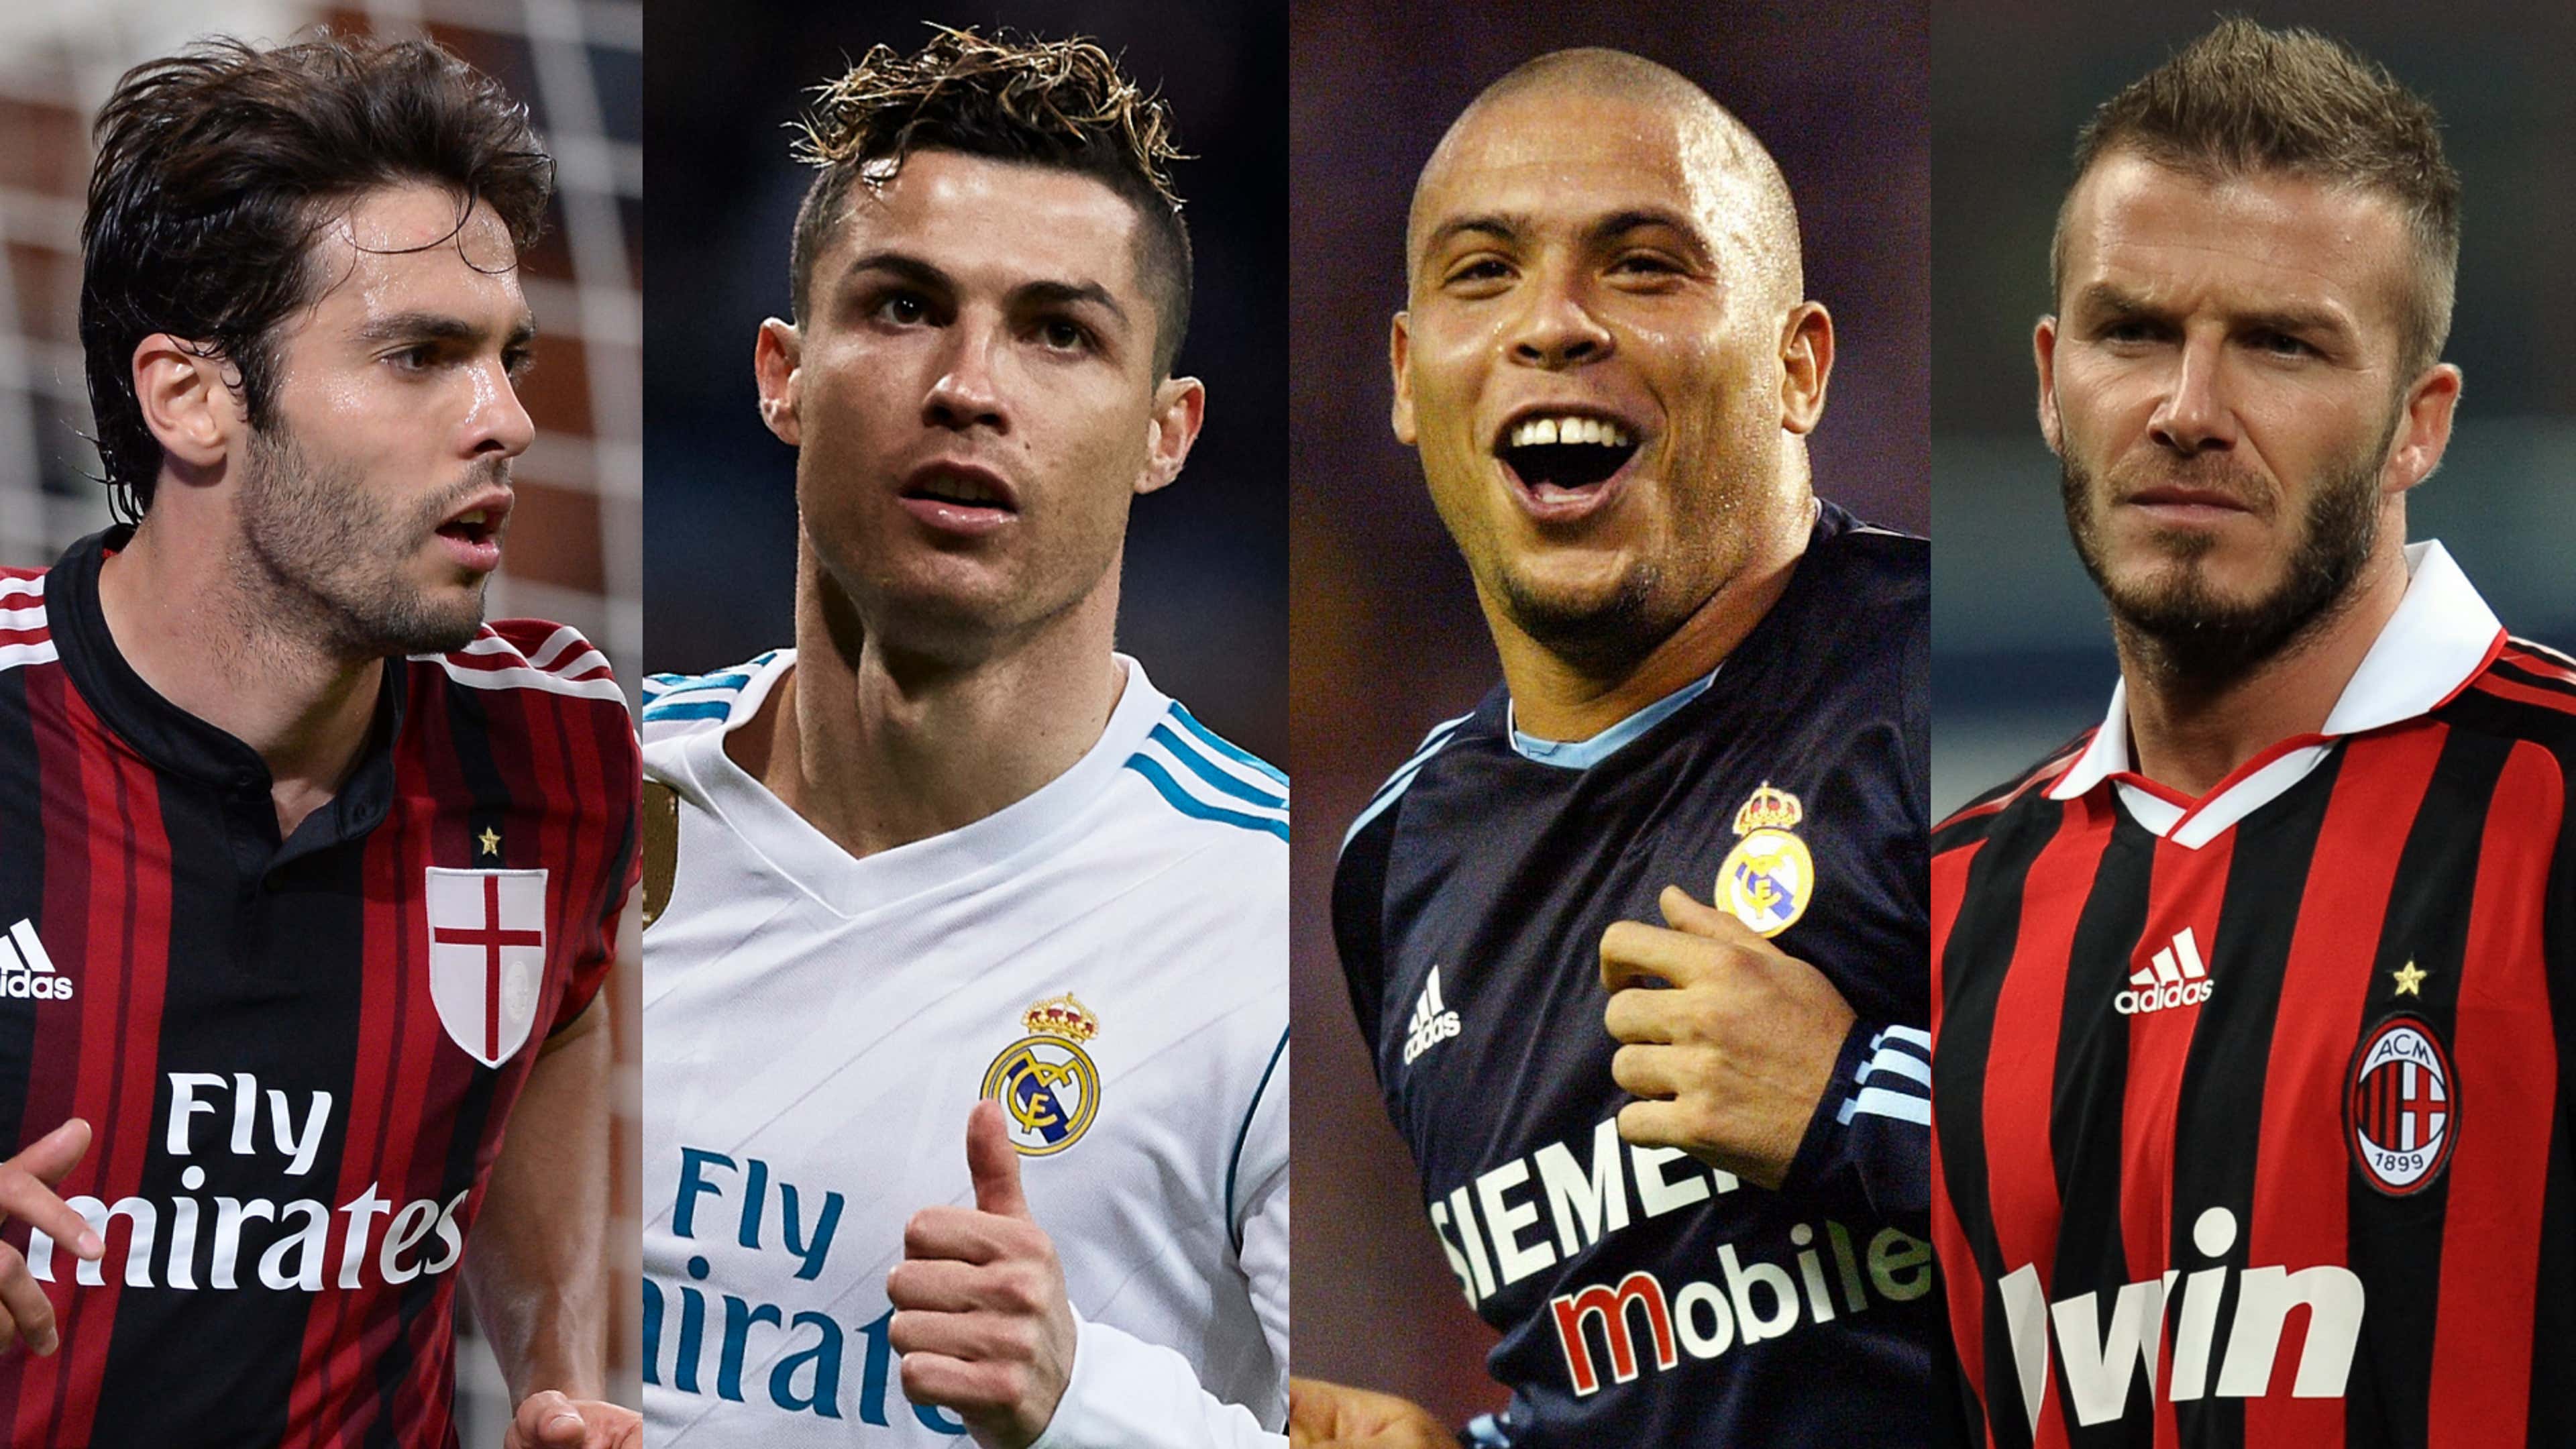 David Beckham, Cristiano Ronaldo, Ronaldinho & R9 – Former Real